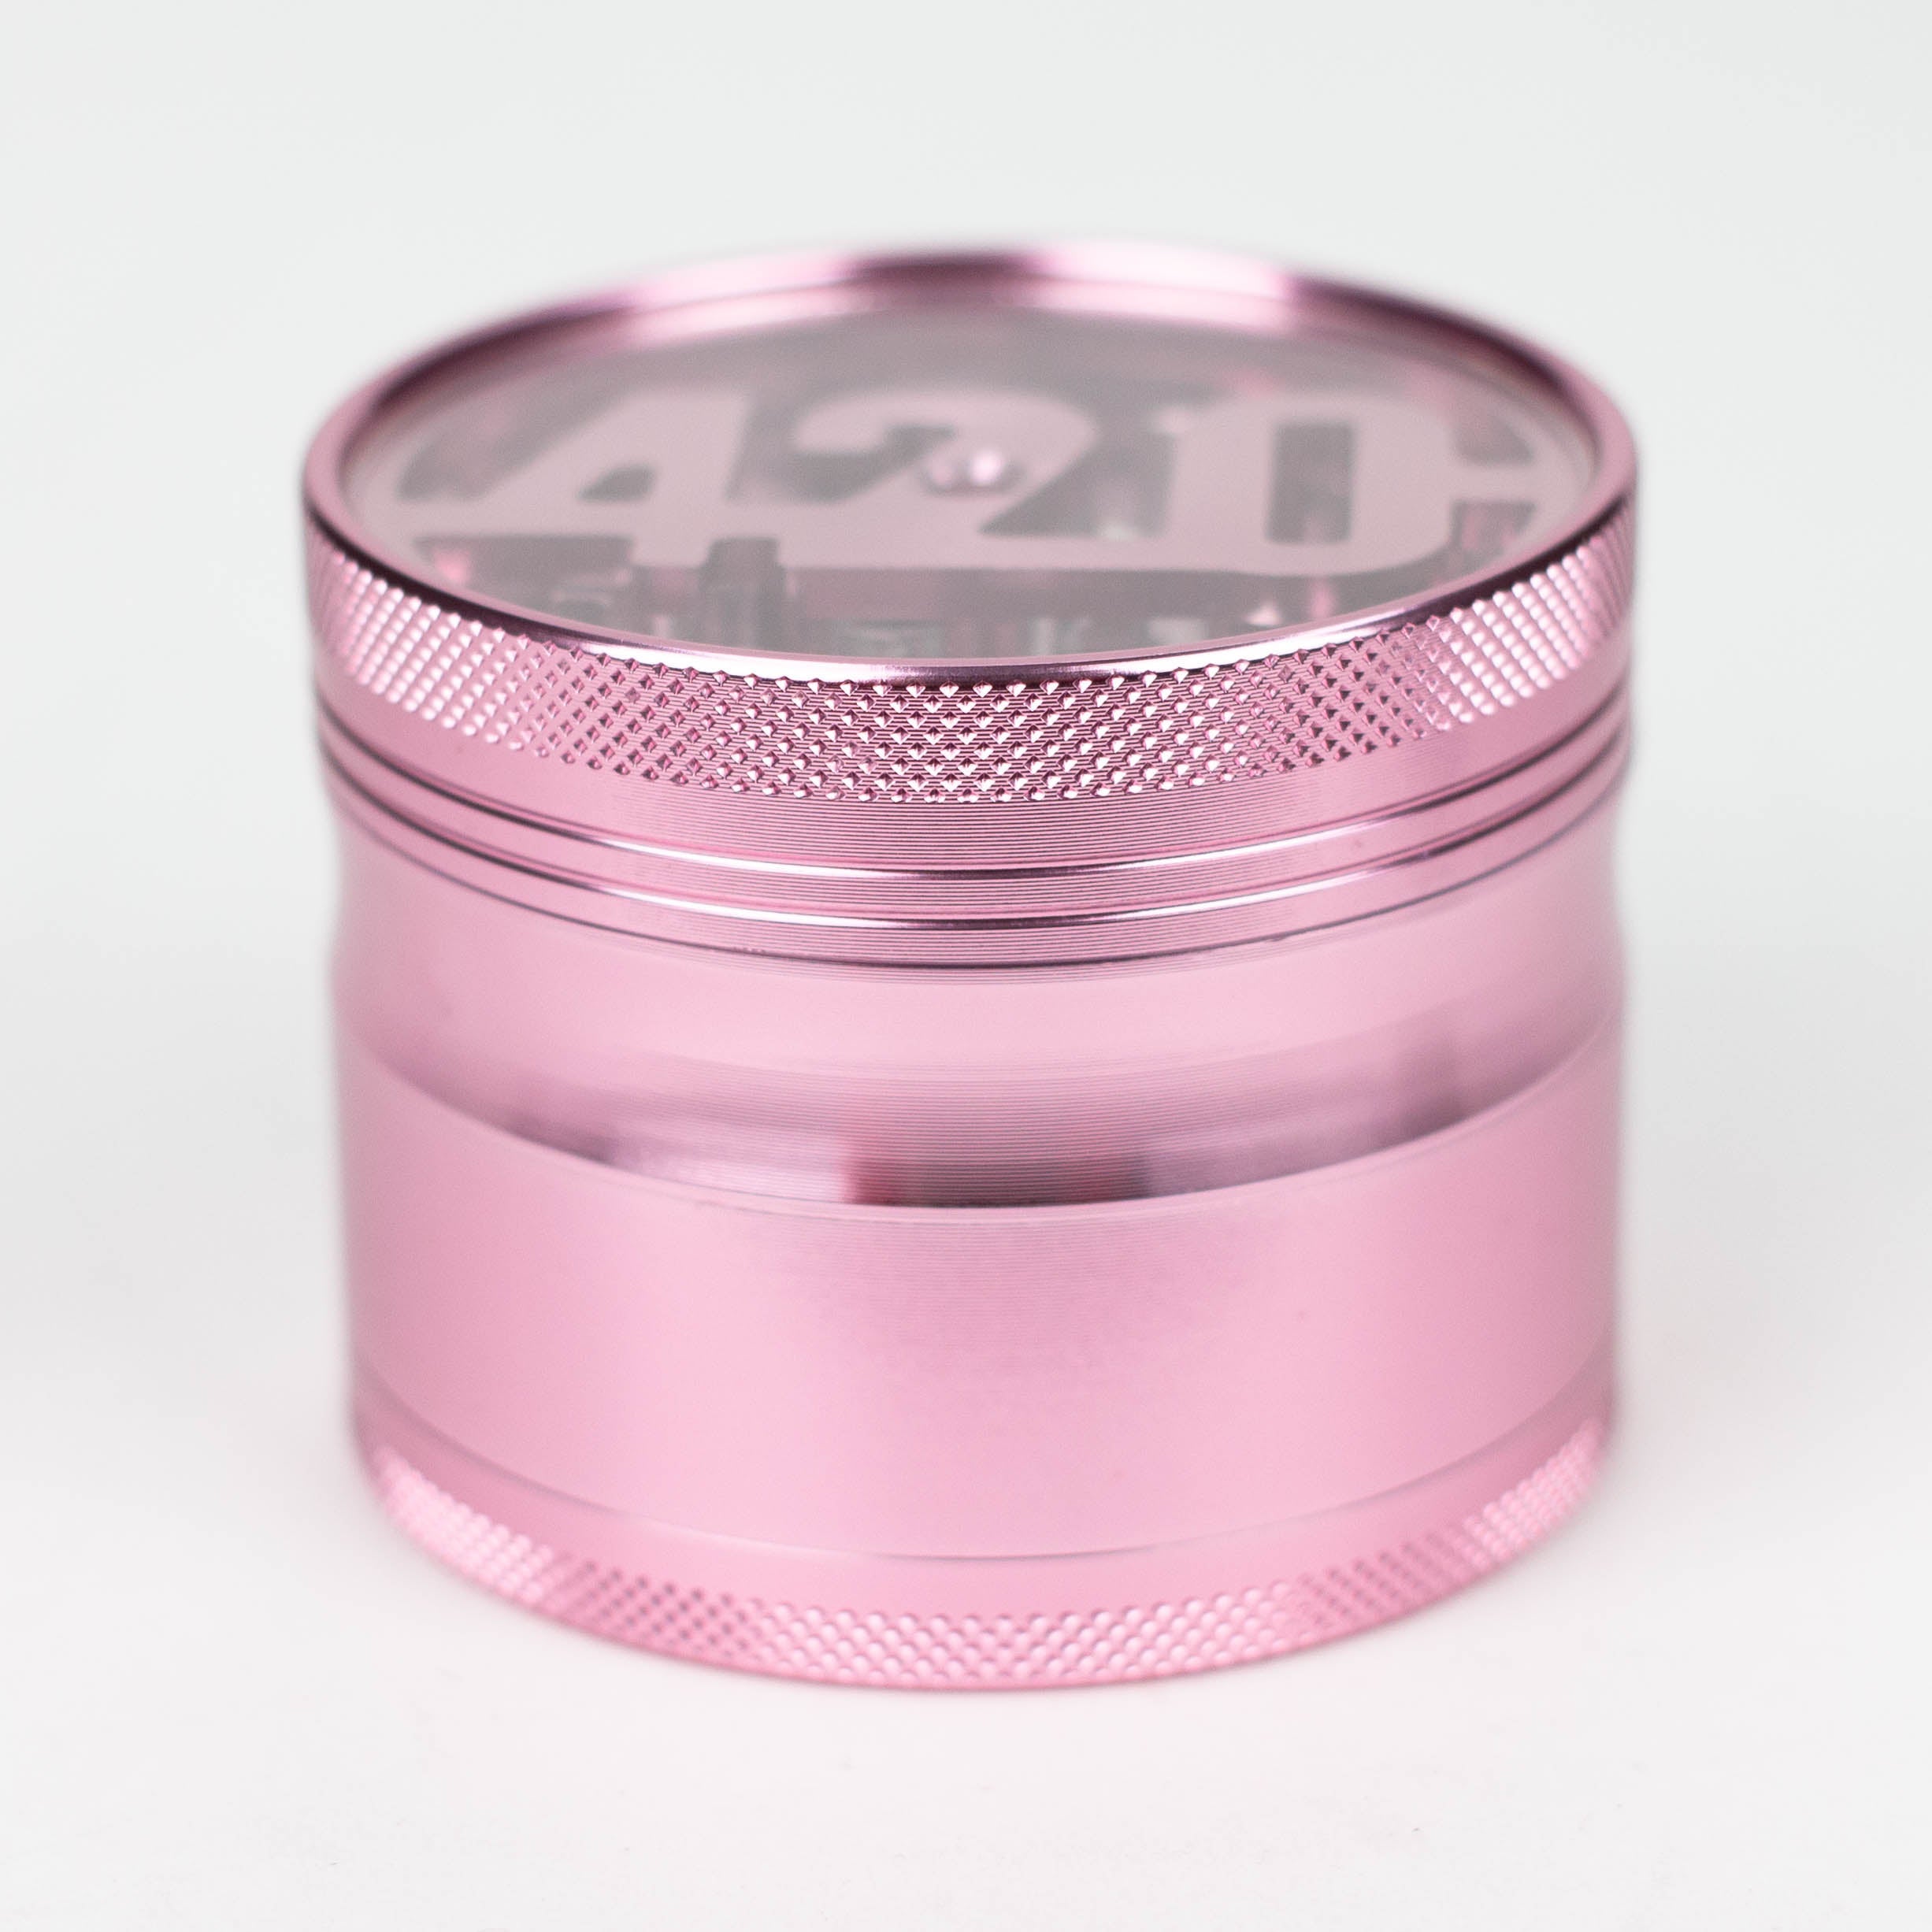 2.5" aluminum grinder with 420 design_0